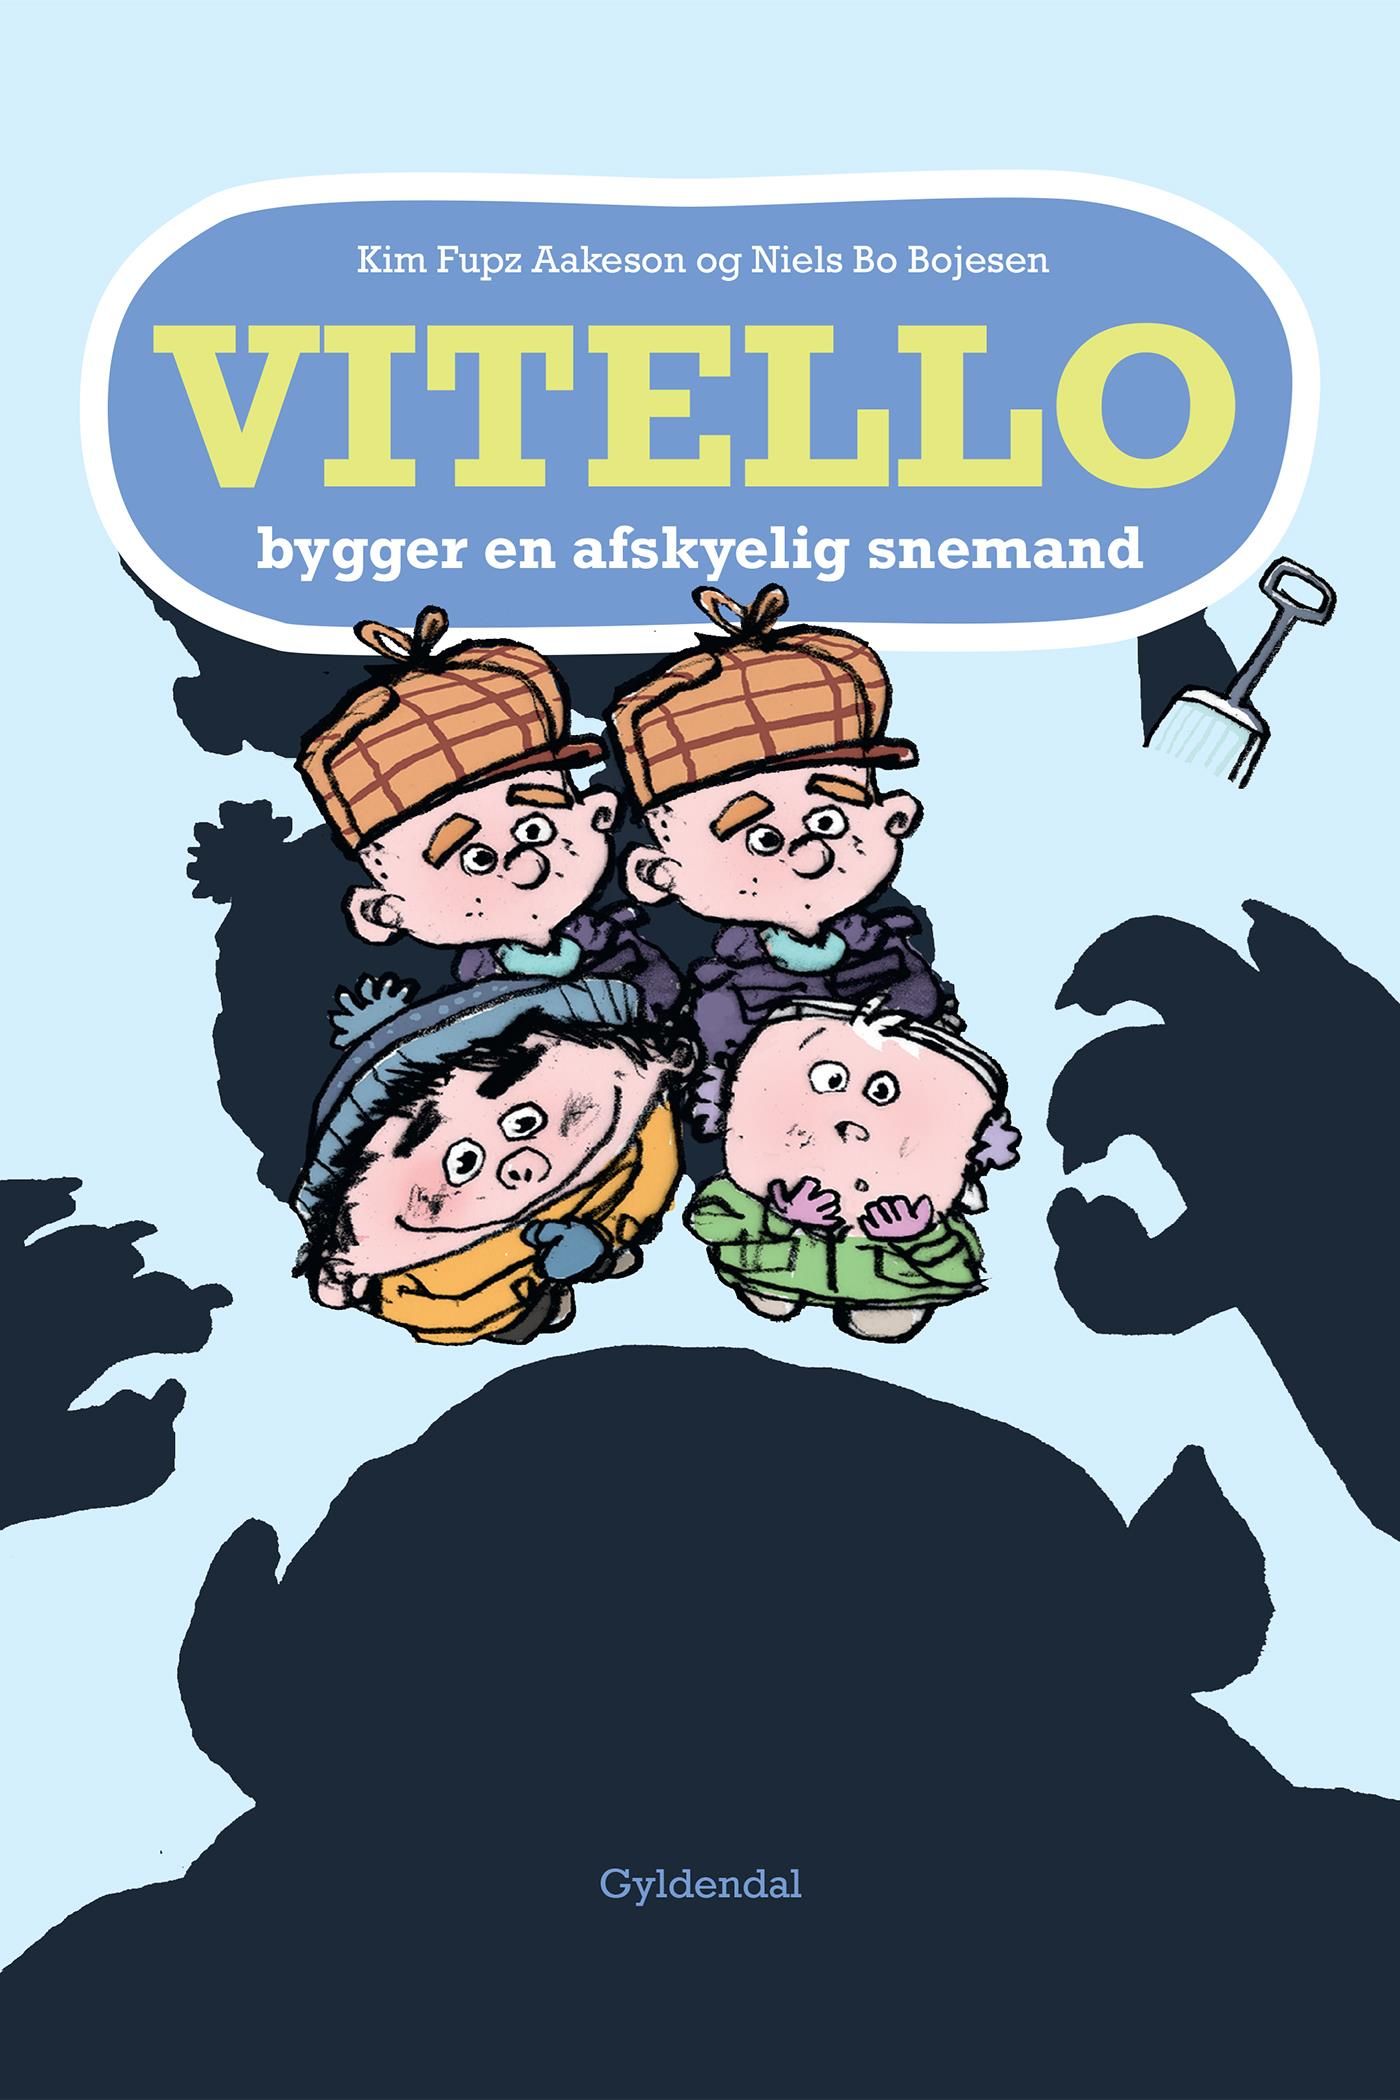 Vitello bygger en afskyelig snemand - Lyt&læs, e-bog af Niels Bo Bojesen, Kim Fupz Aakeson